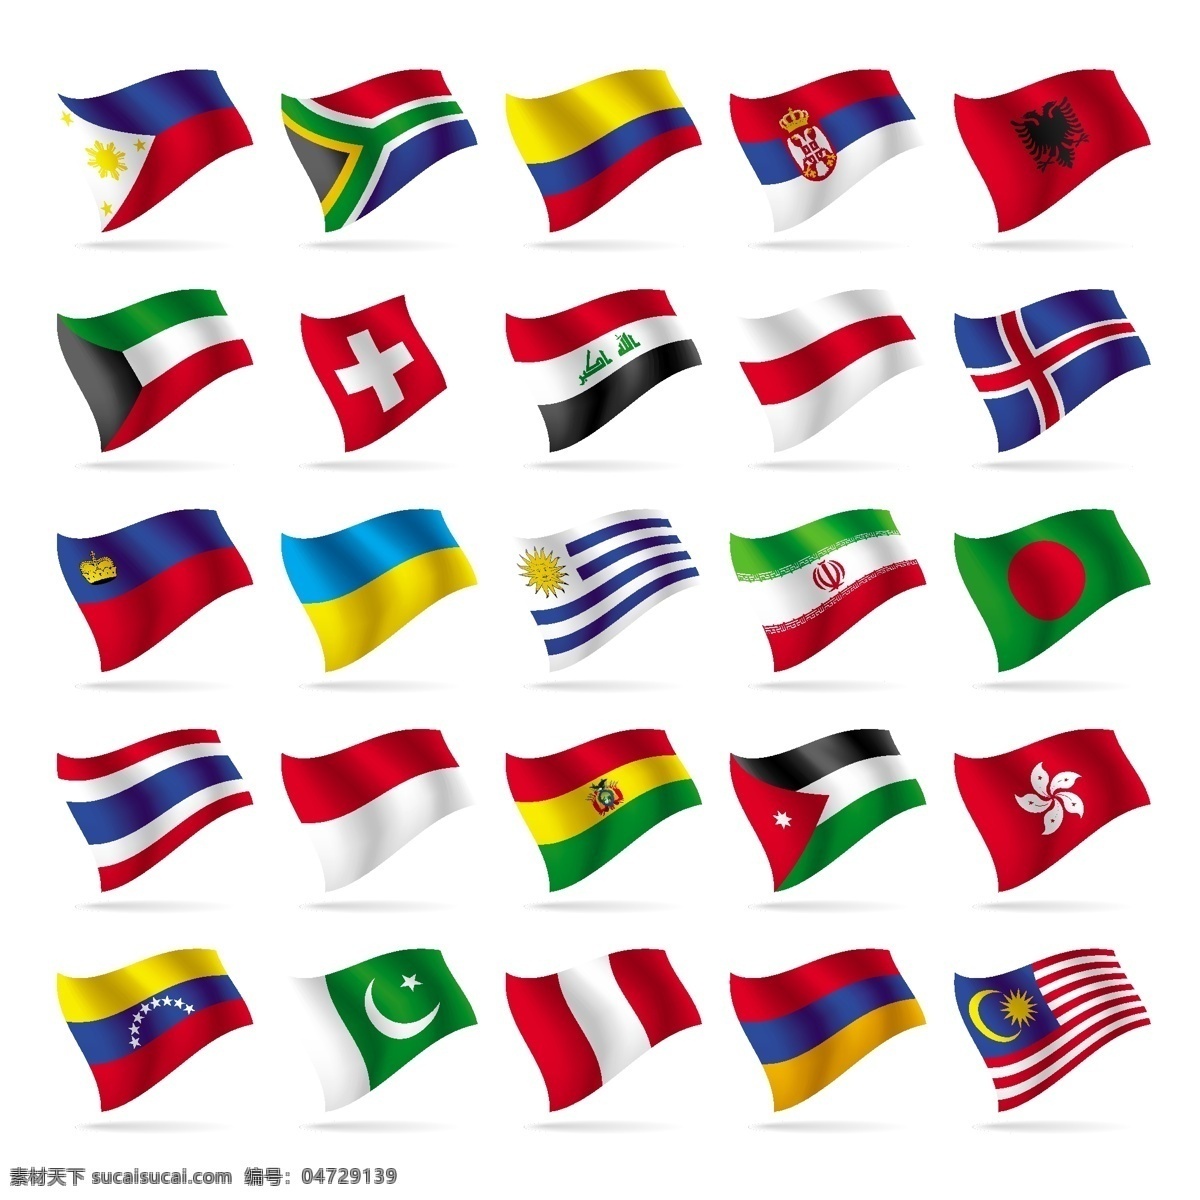 国旗 各国国旗 世界各国 标志 标识 手绘 矢量 国旗标志 图标 标签 logo 小图标 名片卡片